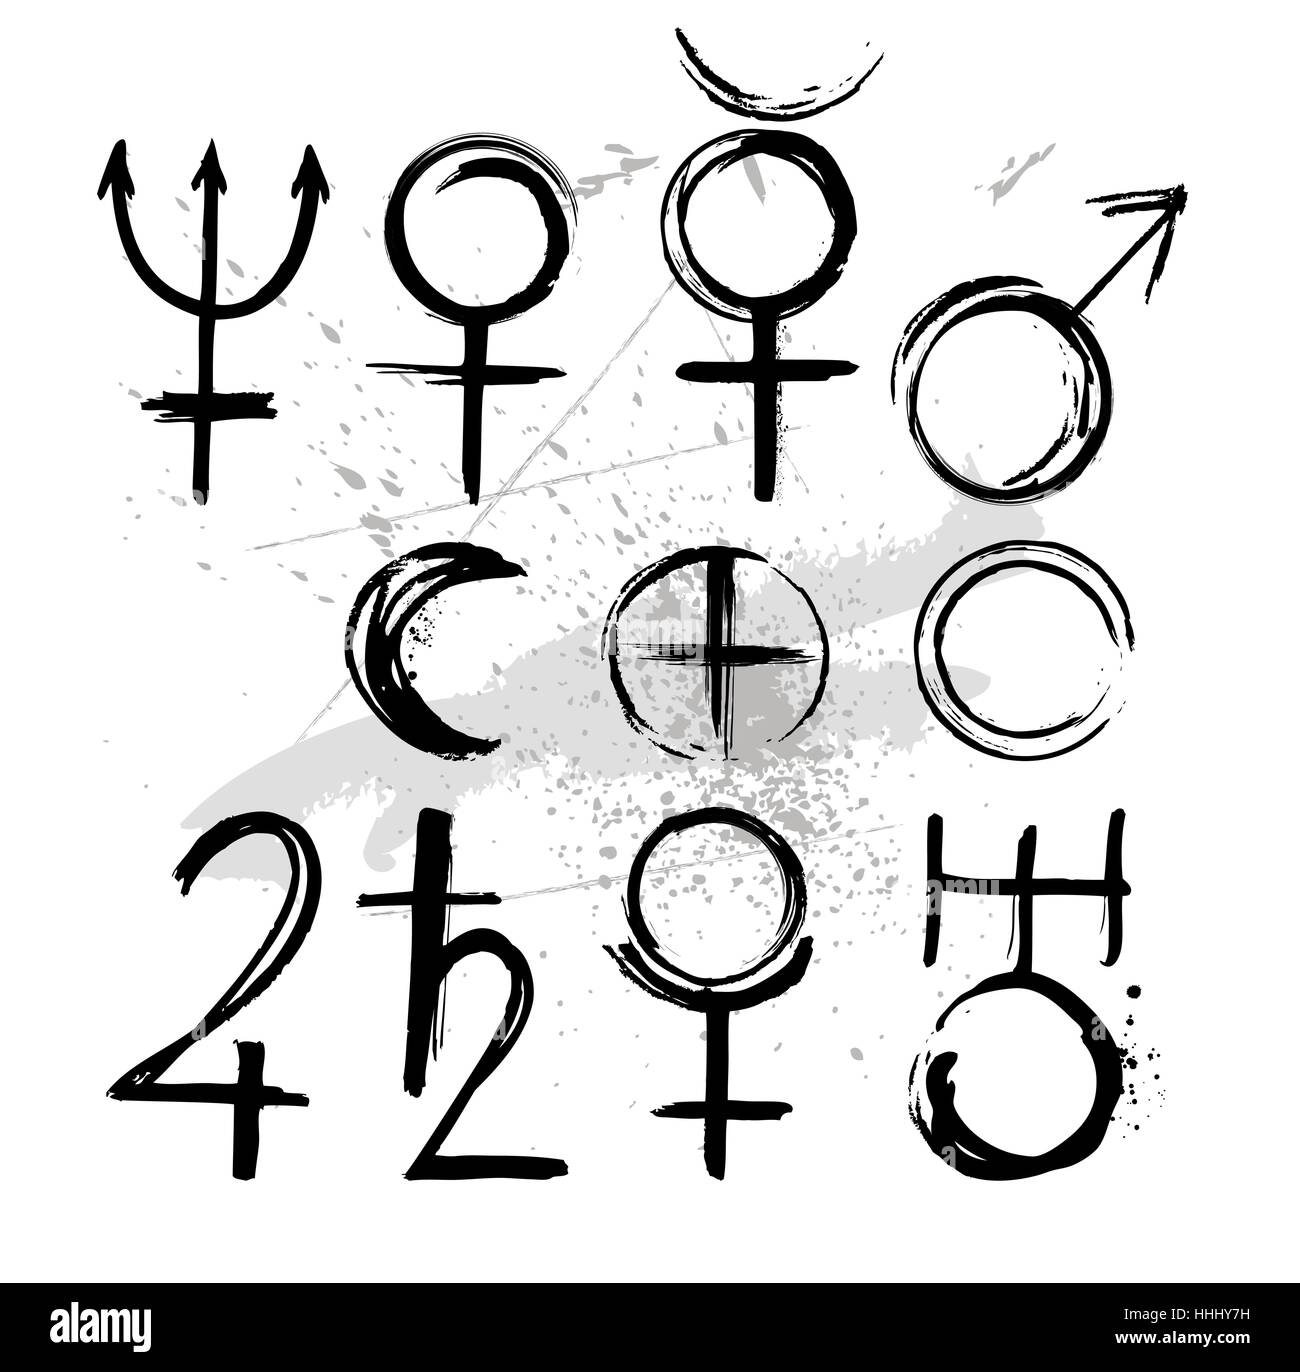 Los símbolos de los planetas del sistema solar: Mercurio, Venus, la tierra, la Luna, Marte, Saturno, Júpiter, uranio, Neptuno Plutón Ilustración del Vector